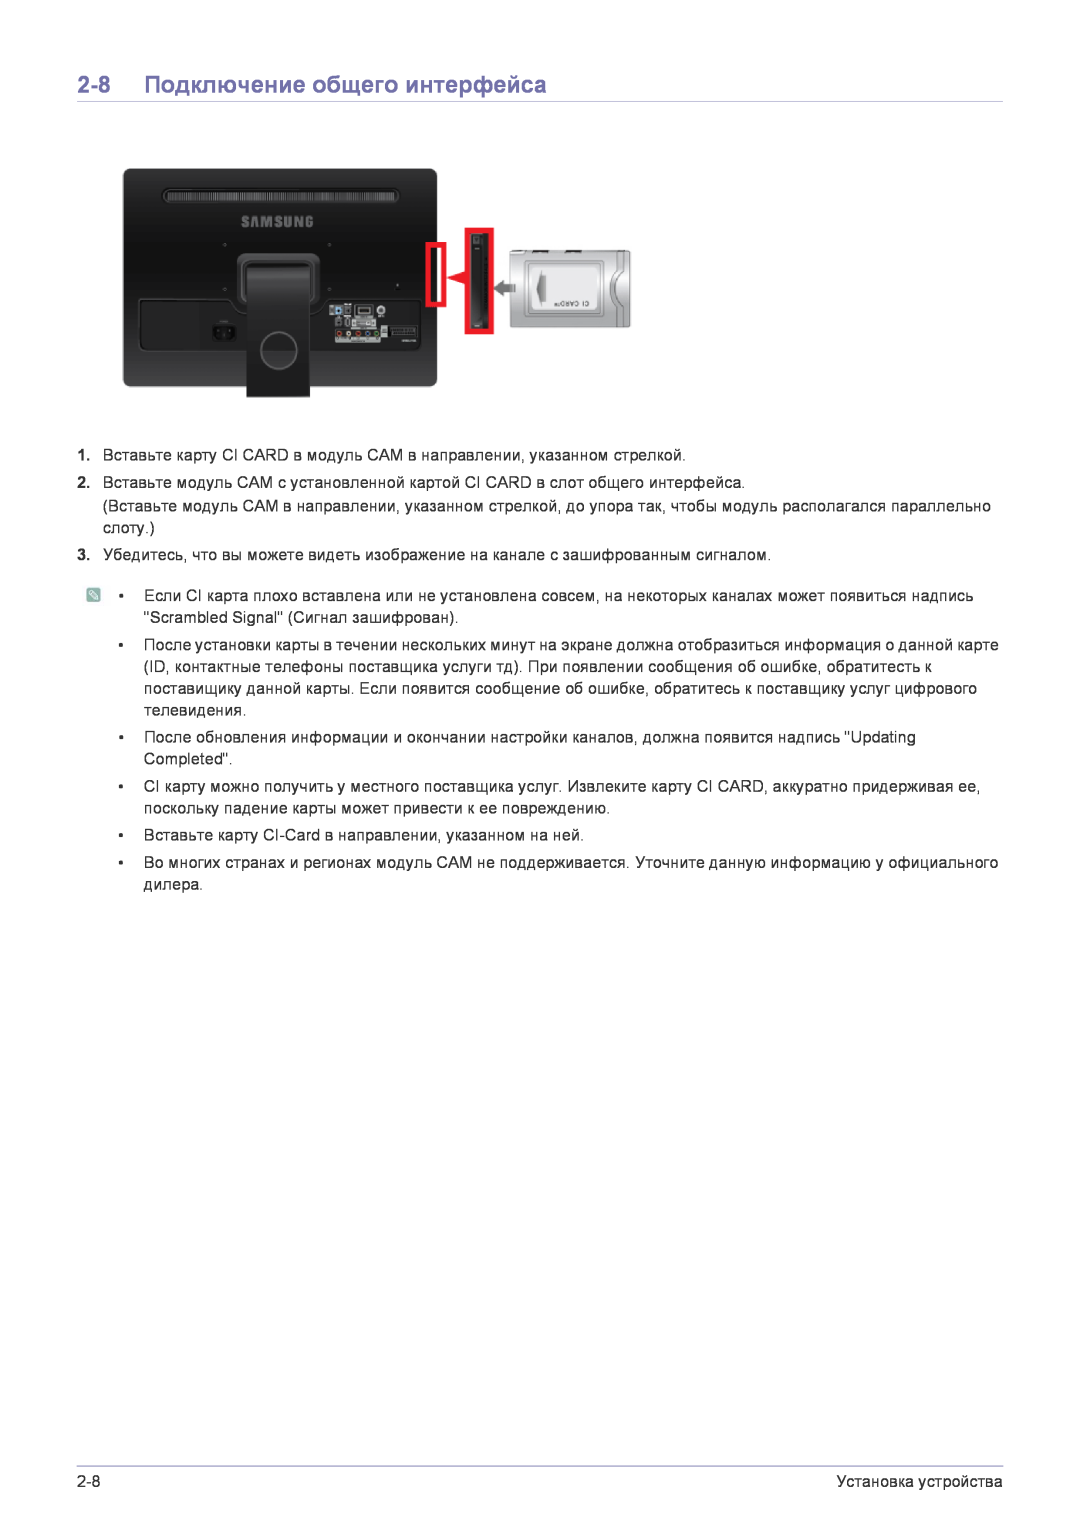 Samsung LS22FMDGF/EN manual 2-8 Подключение общего интерфейса 